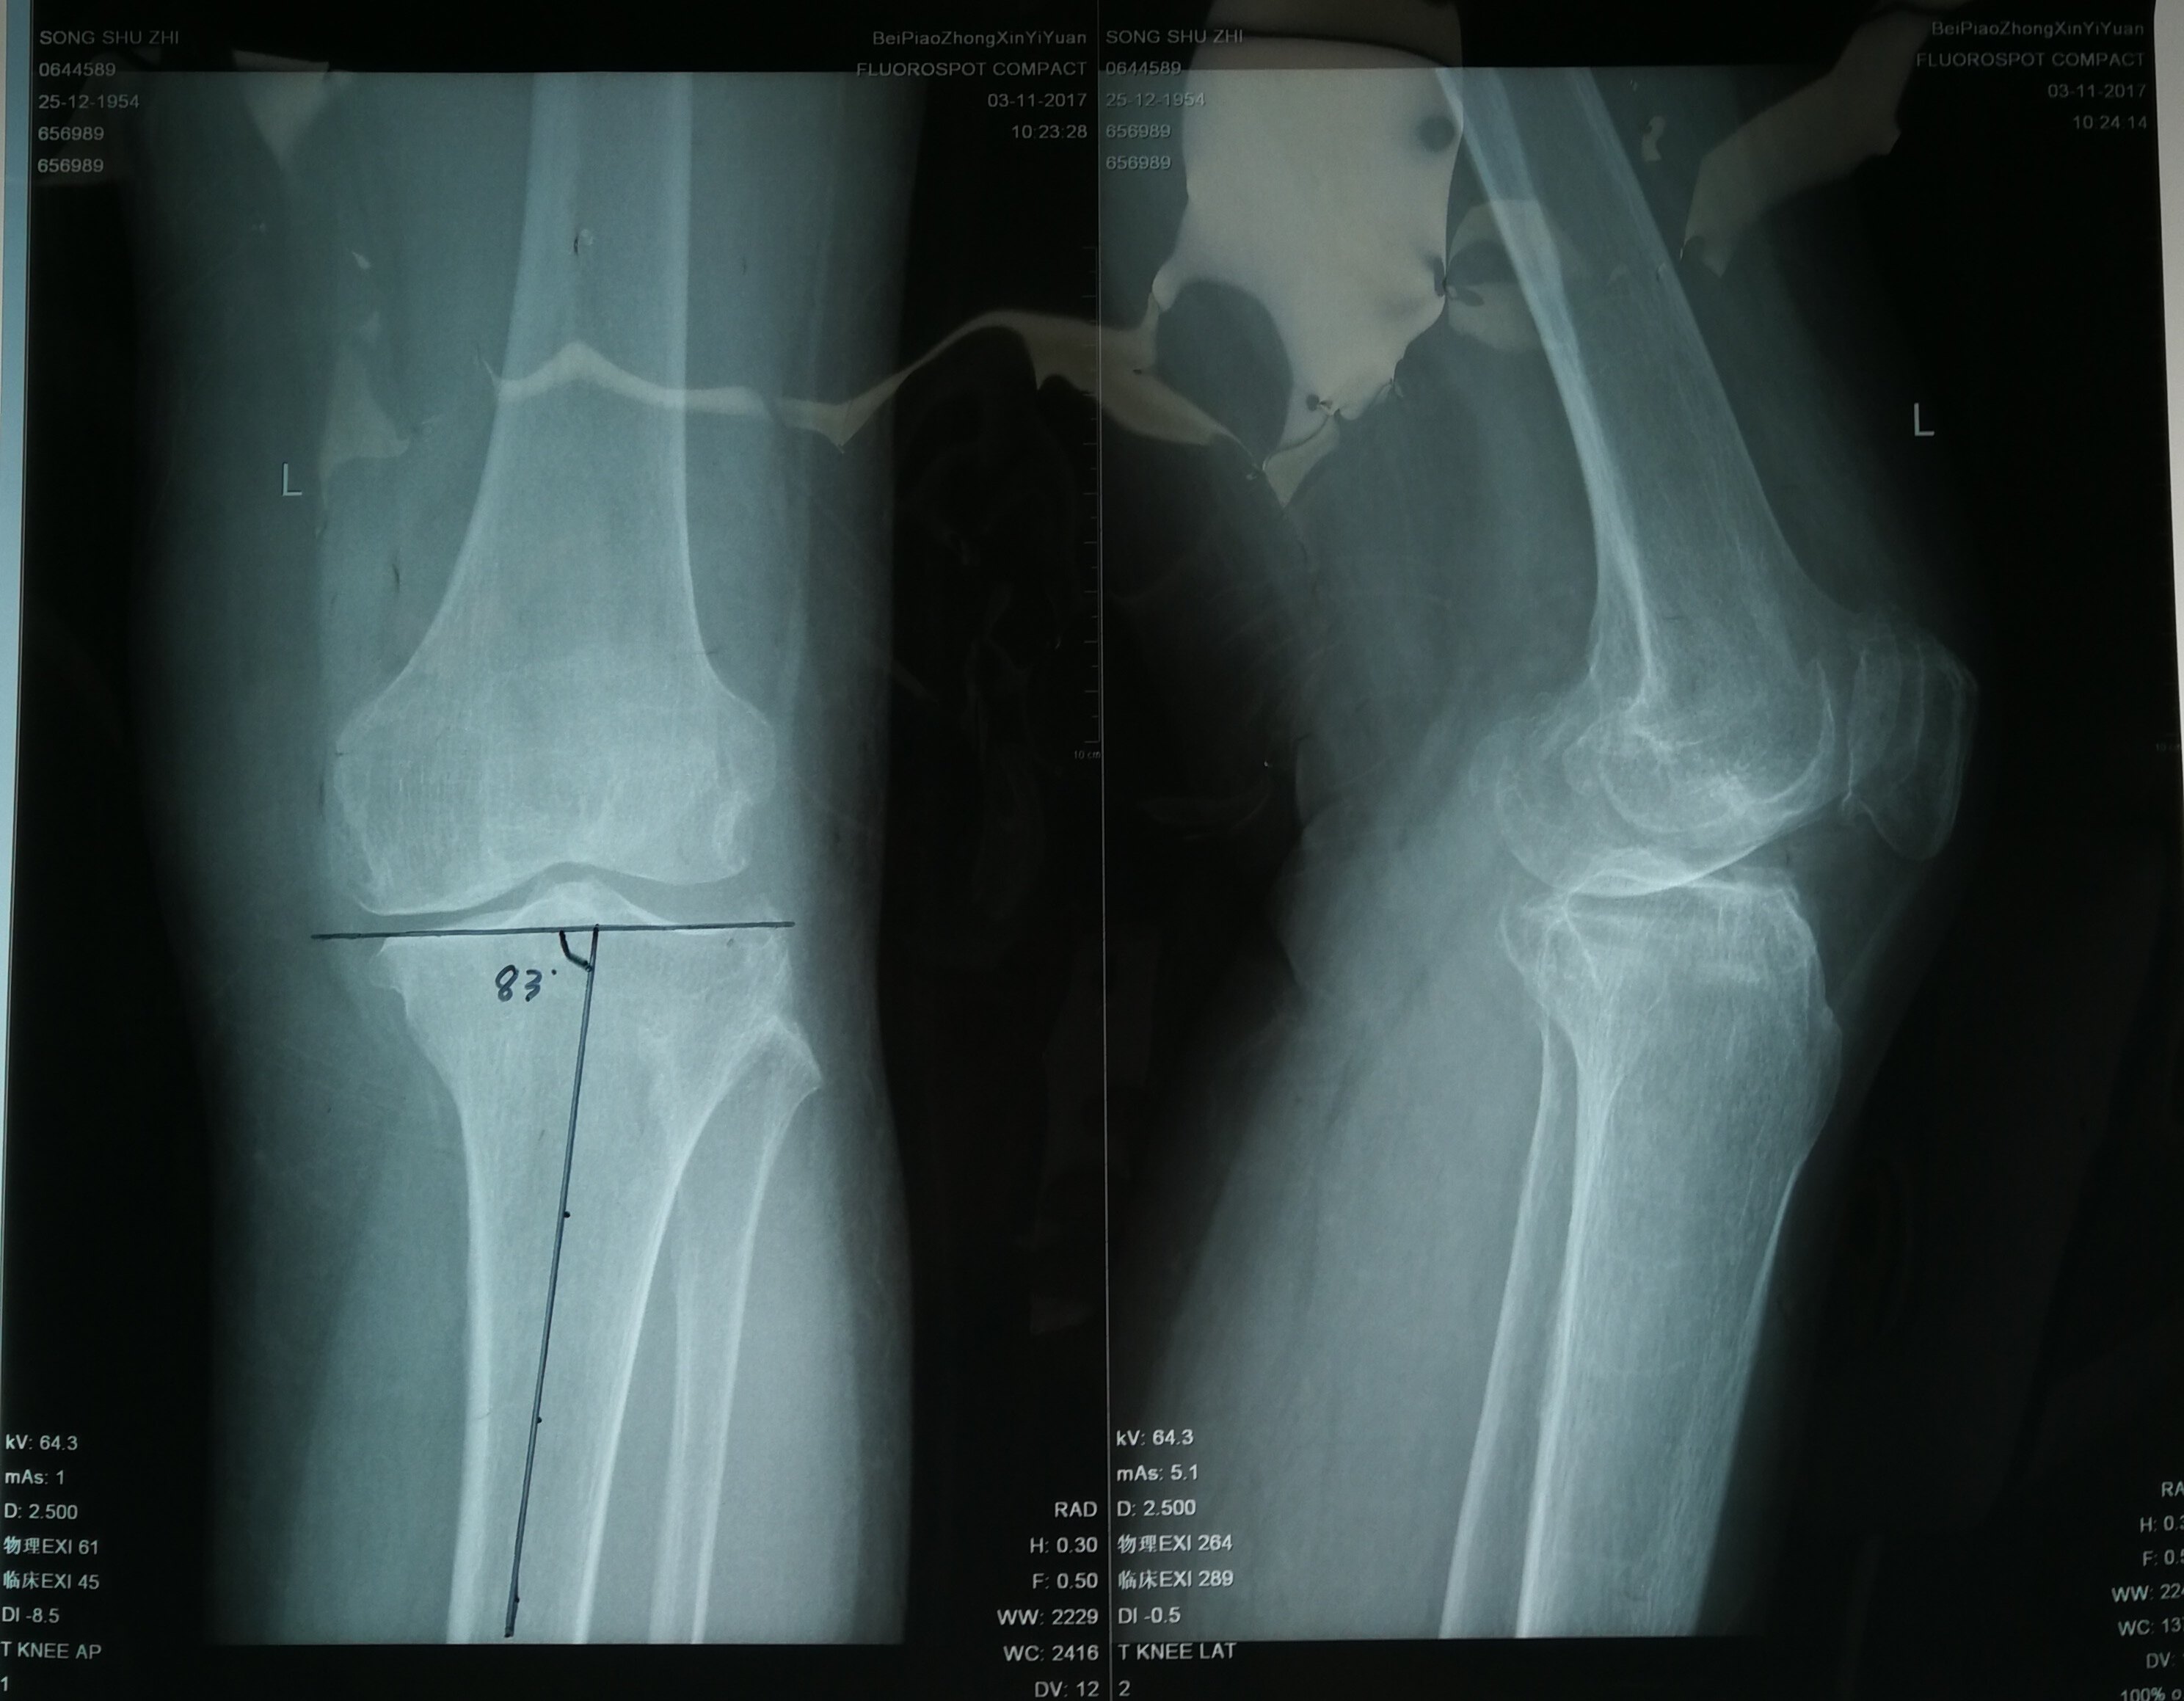 63岁女性,膝关节骨性关节炎,胫骨近端高位截骨术 